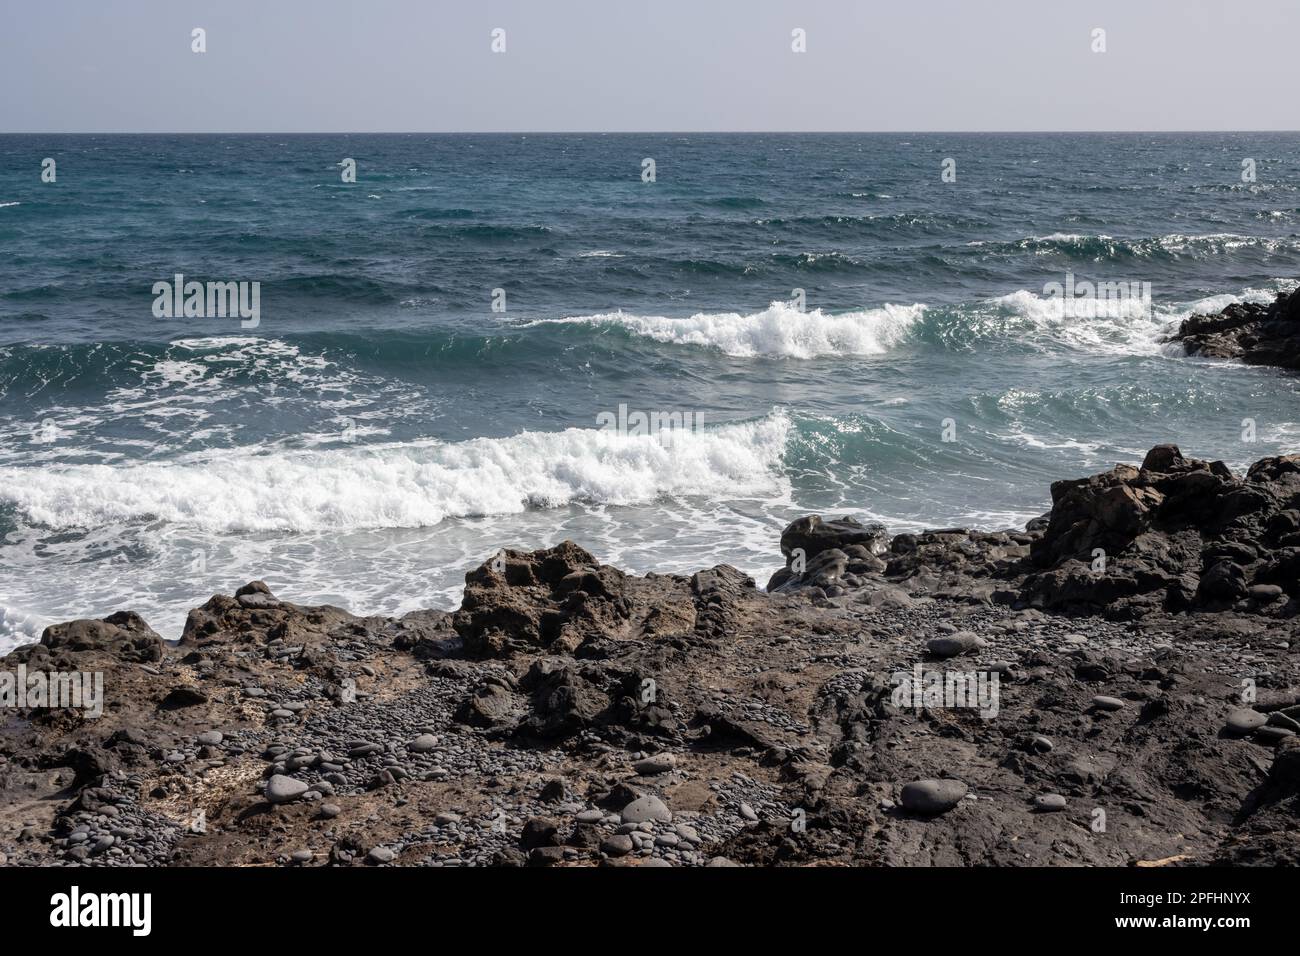 Atlantic ocean with small waves. Black rocks at the coast. Blue sky on a horizon. Fabrica de callao de los Pozos, Puerto del Rosario, Fuerteventura, S Stock Photo